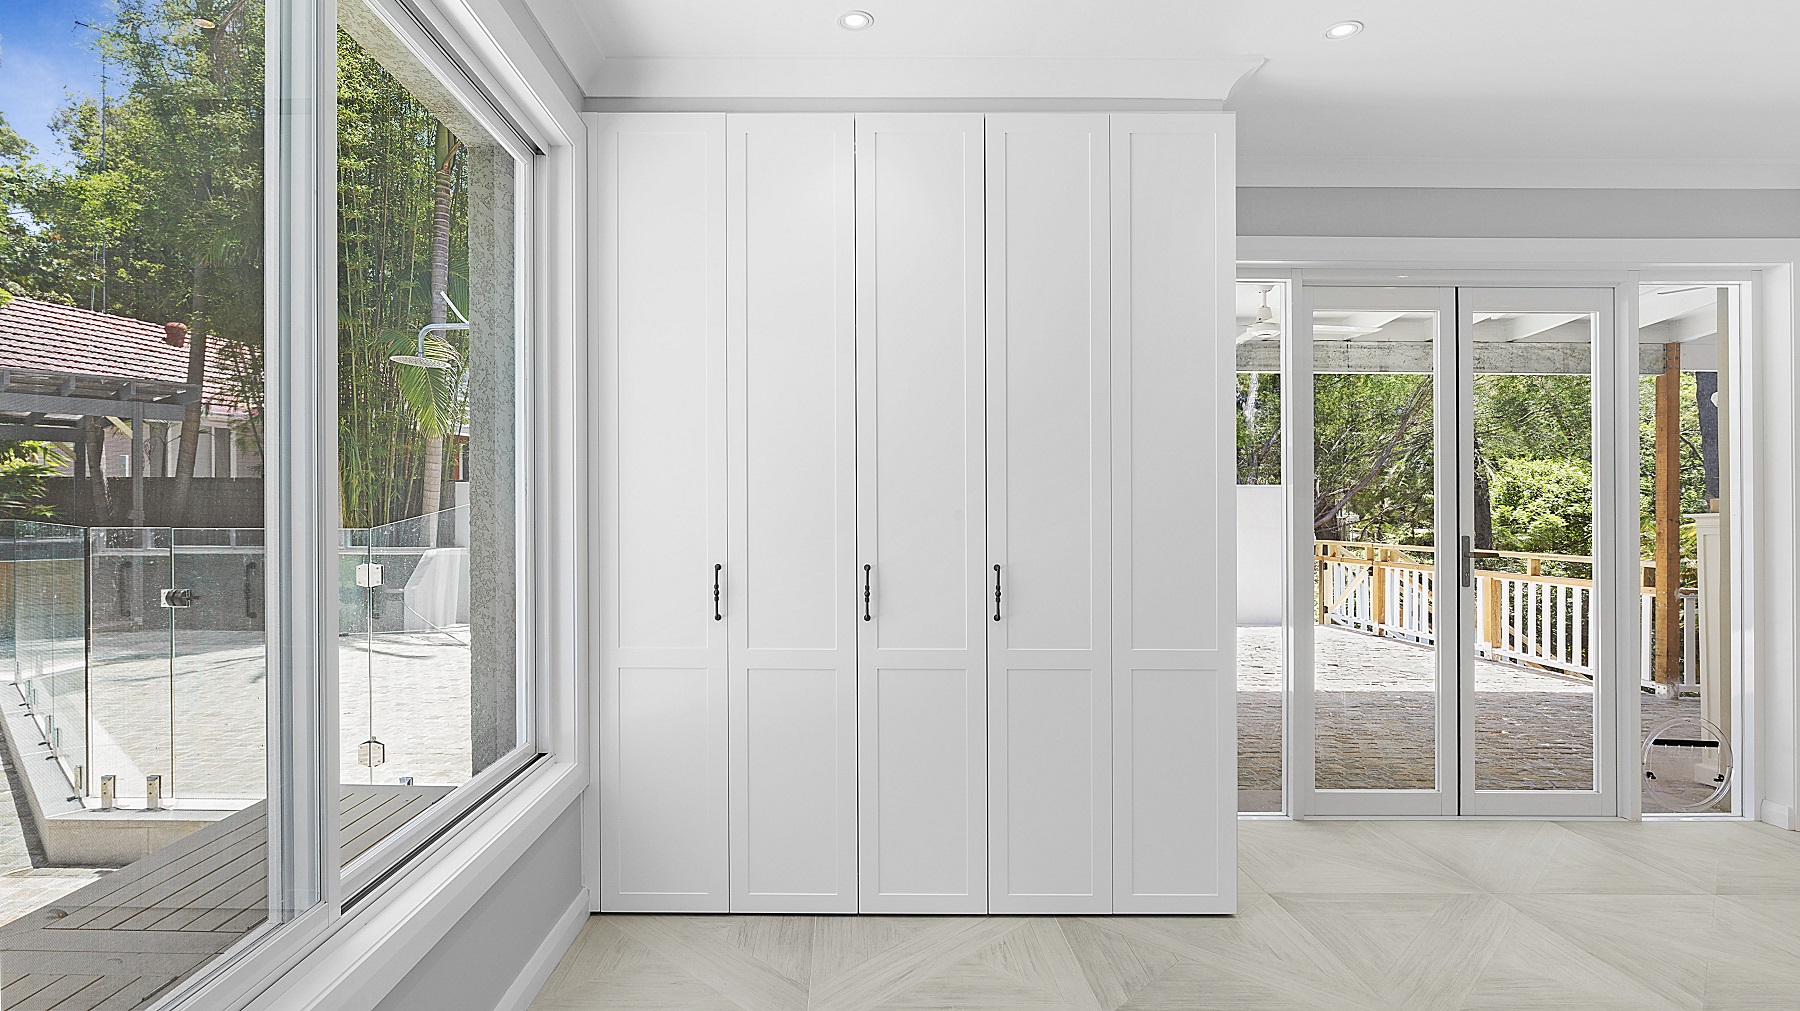 Polyurethane Shaker style cabinets with bi-folding doors to laundry area - Oatley, Sydney